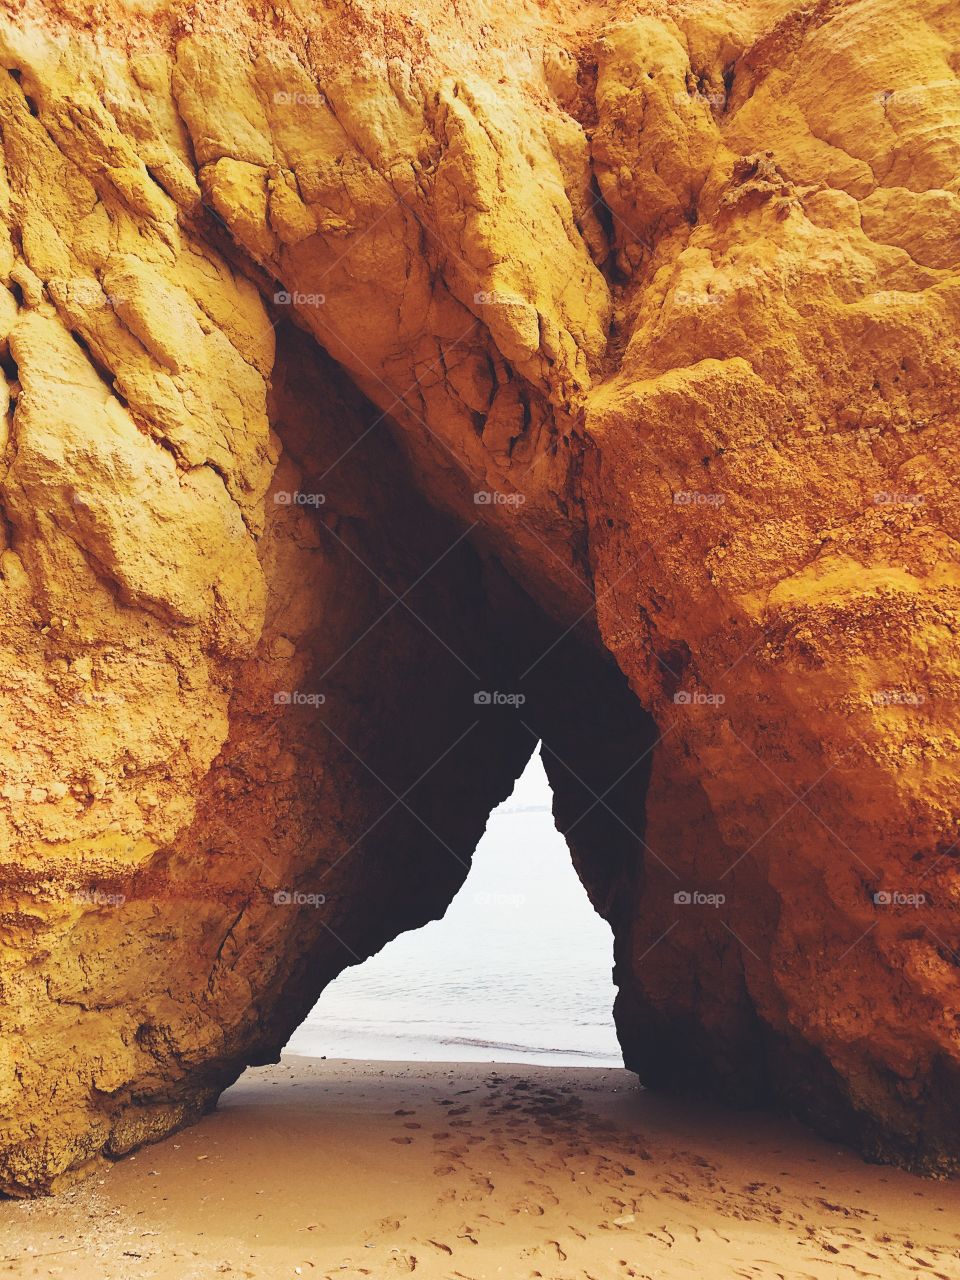 Rocks in Lagos, Algarve, Portugal 